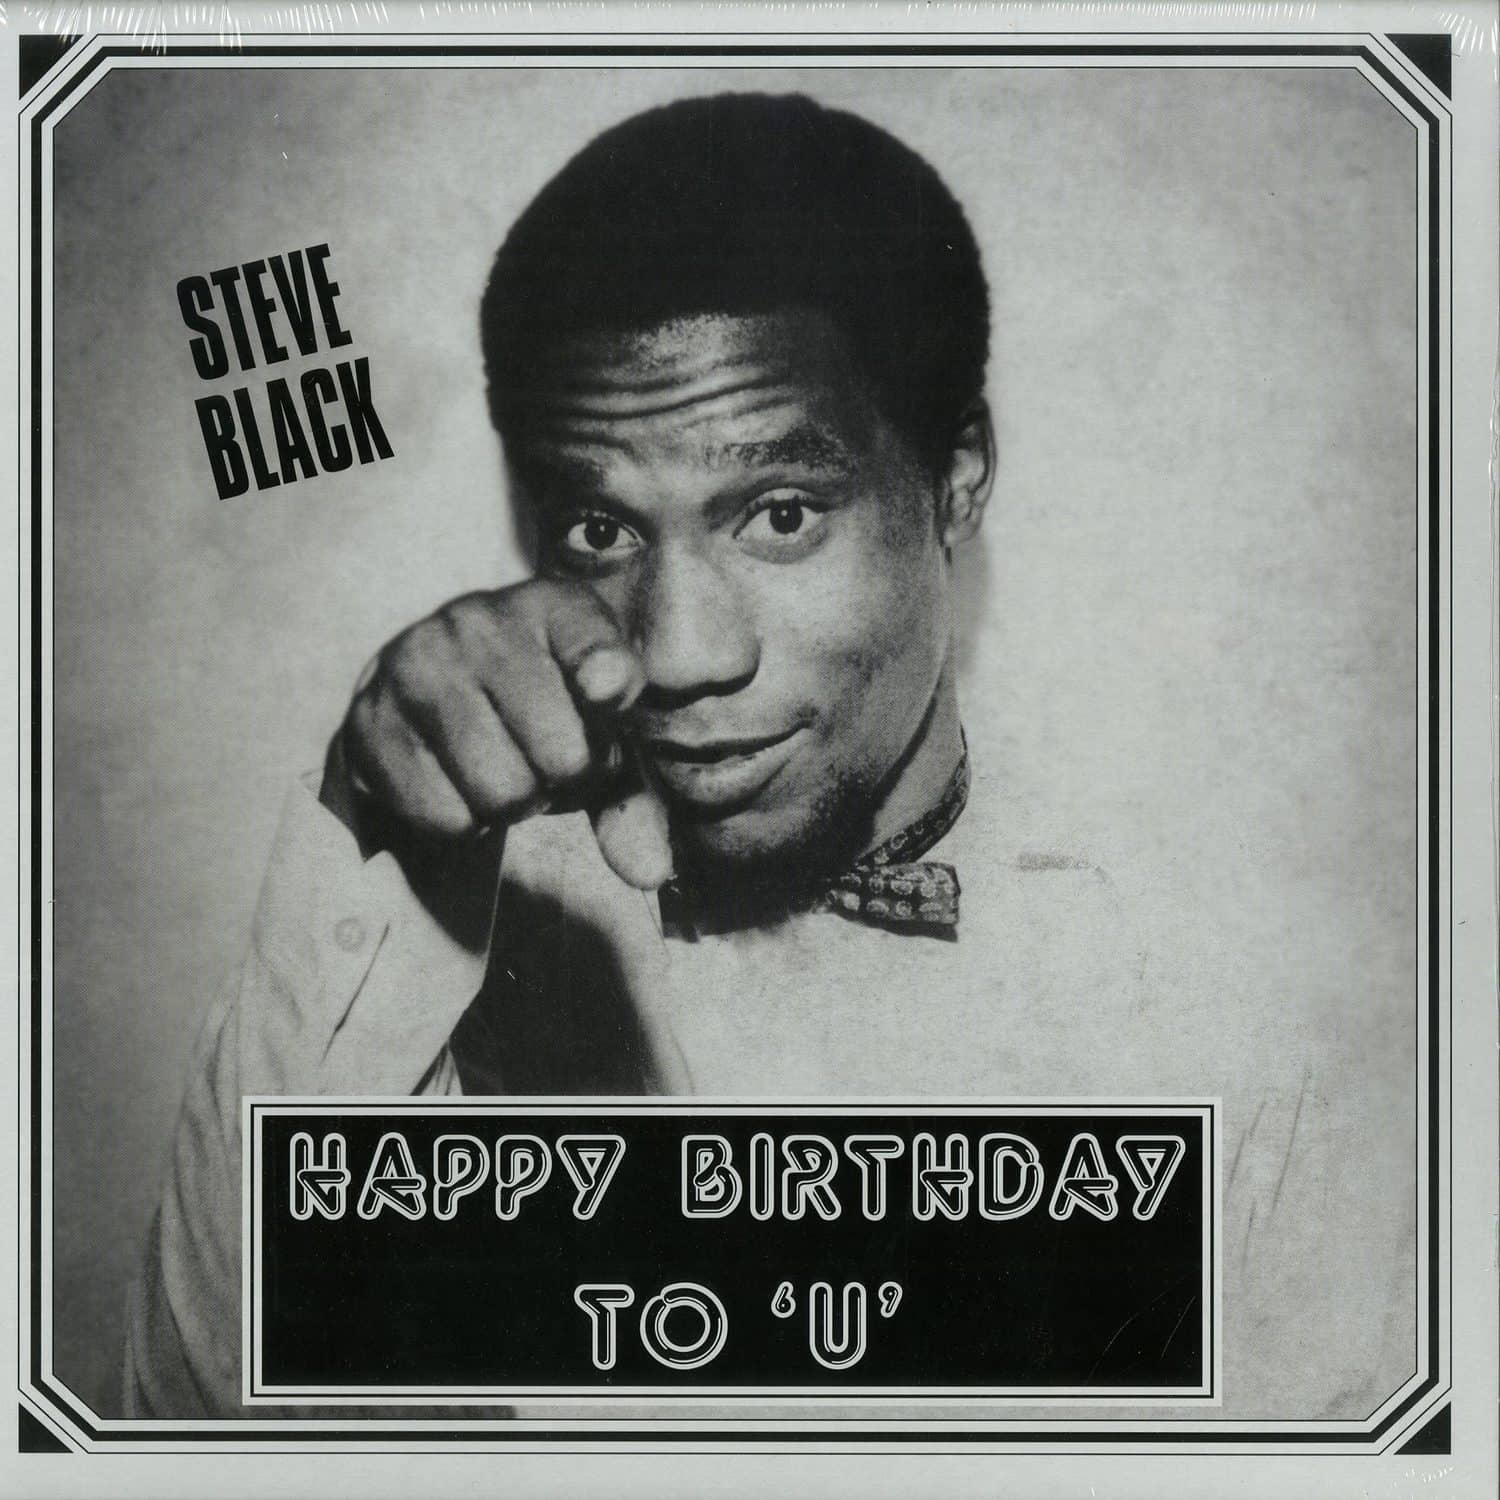 Steve Black - HAPPY BIRTHDAY TO U 